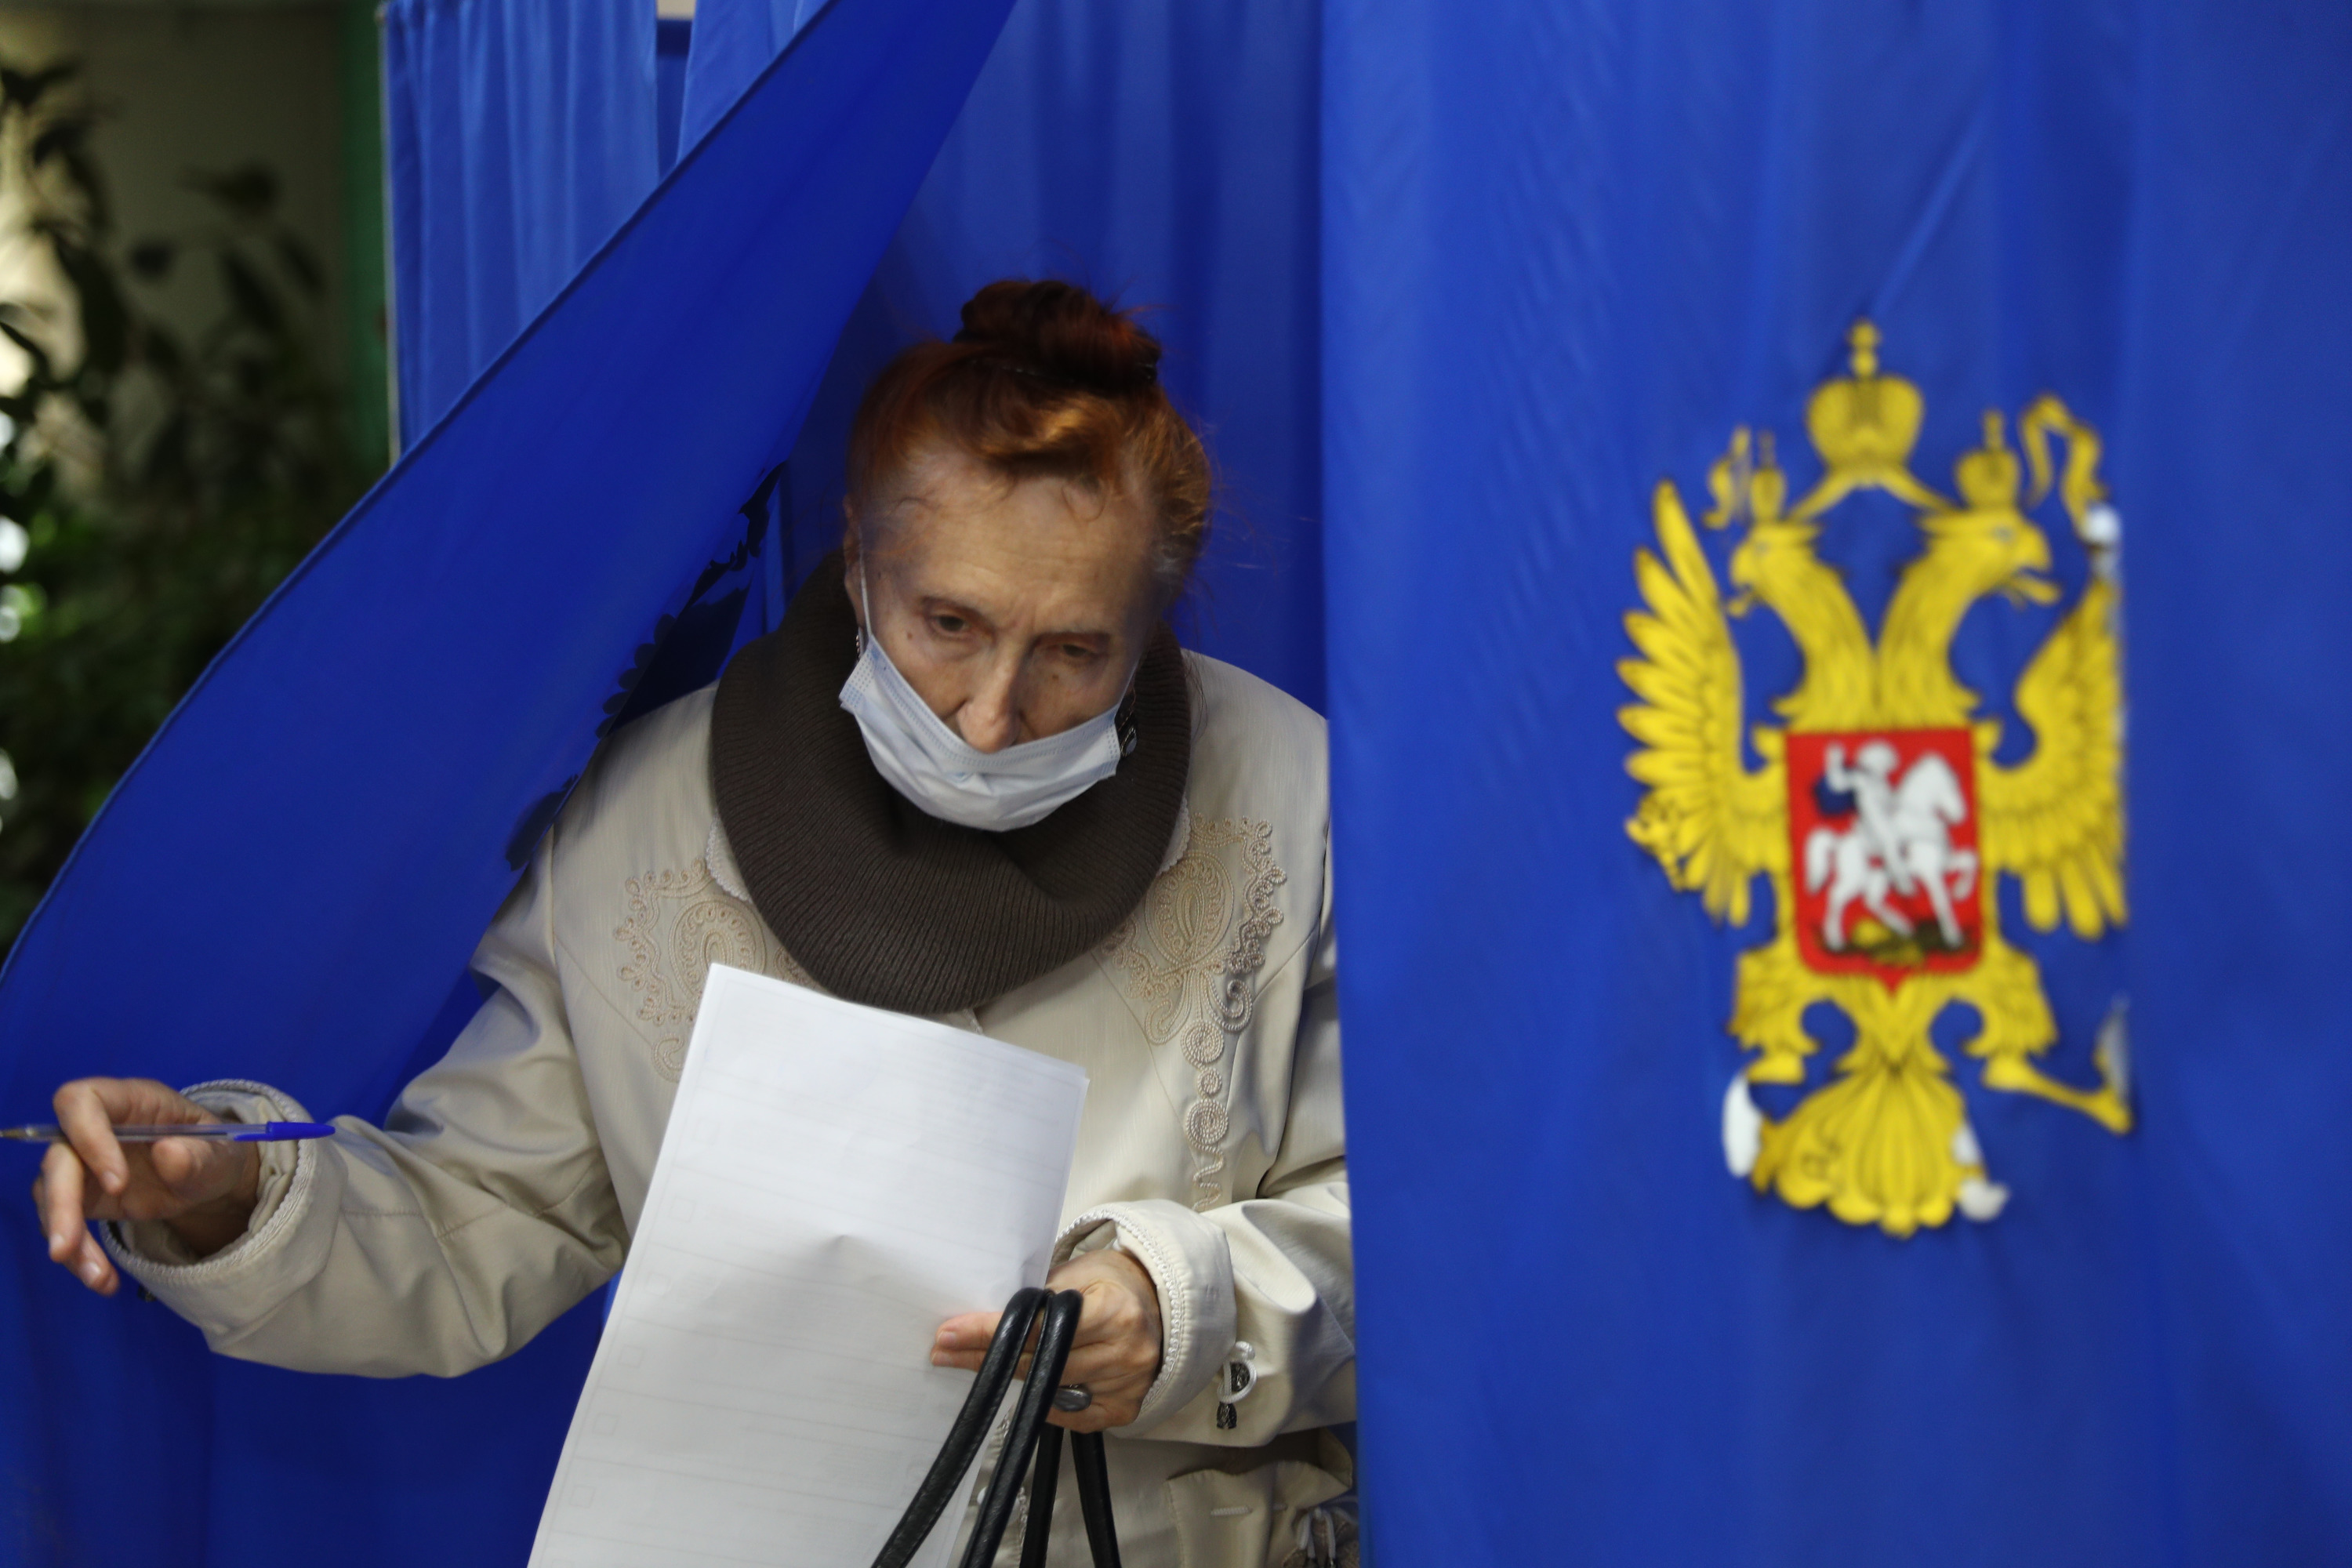 С детьми, питомцами и нарушениями: как проходили выборы в Новосибирске — фоторепортаж